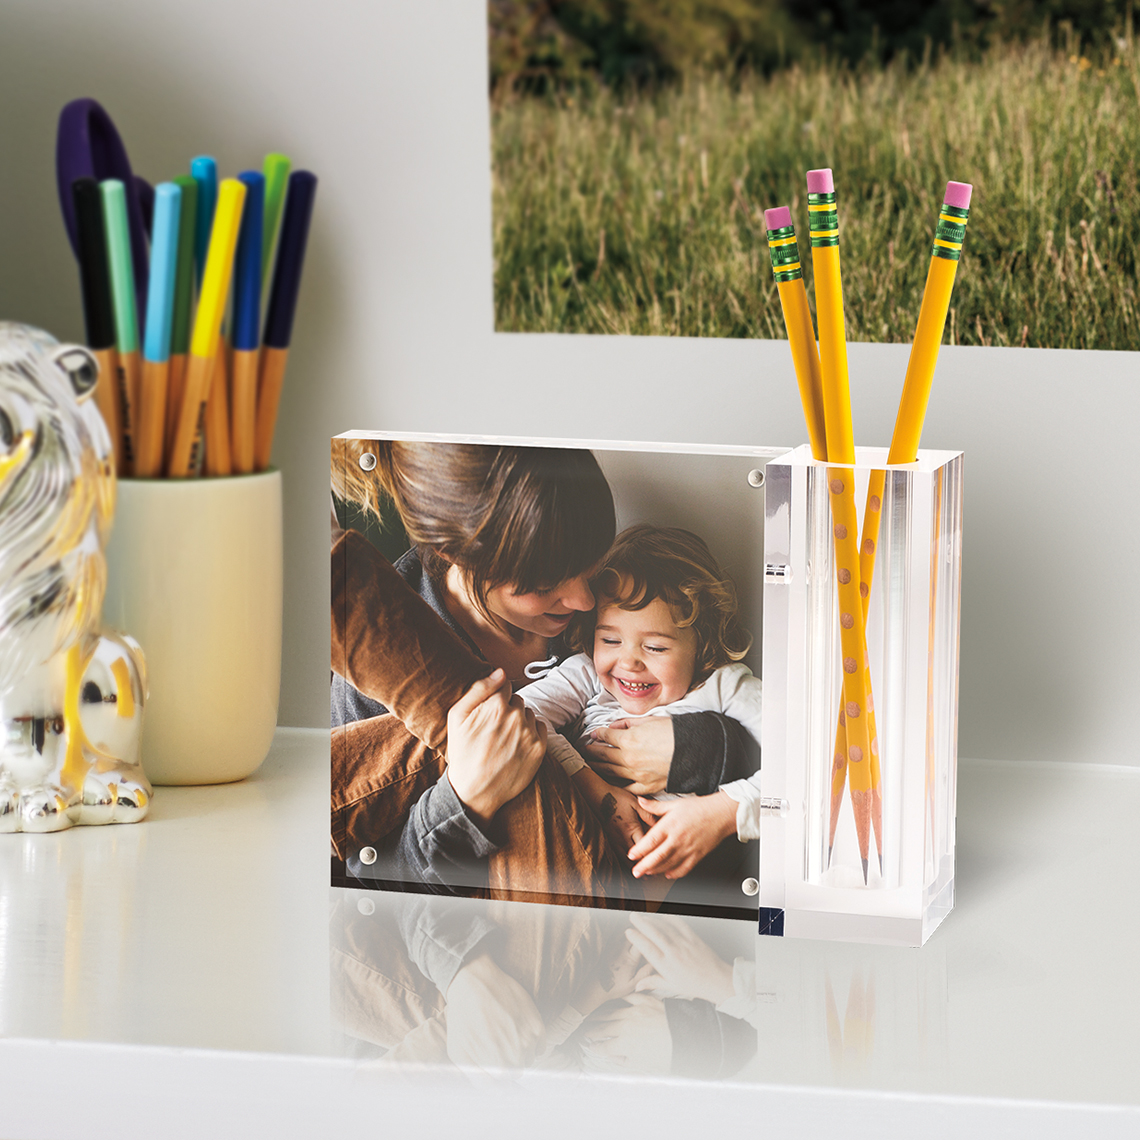 Personalized Acrylic Photo Desk Set Acrylic Deskset Home Gift